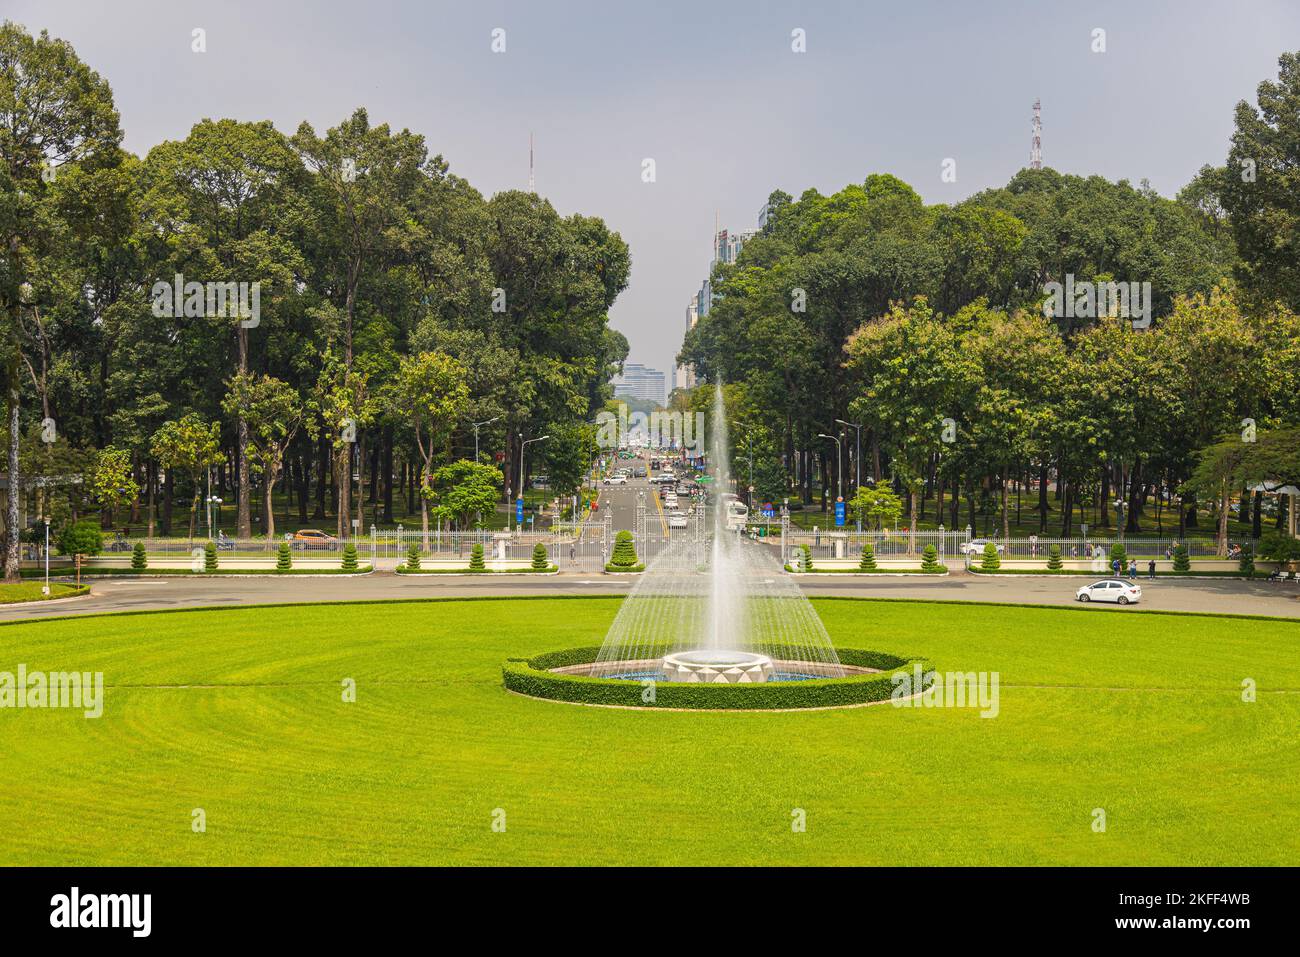 Ho-Chi-Minh-Stadt, Vietnam - 07. November 2022: Wasserbrunnen im Park vor dem Wiedervereinigungspalast oder dem Unabhängigkeitspalast Saigon. Beschäftigt tra Stockfoto